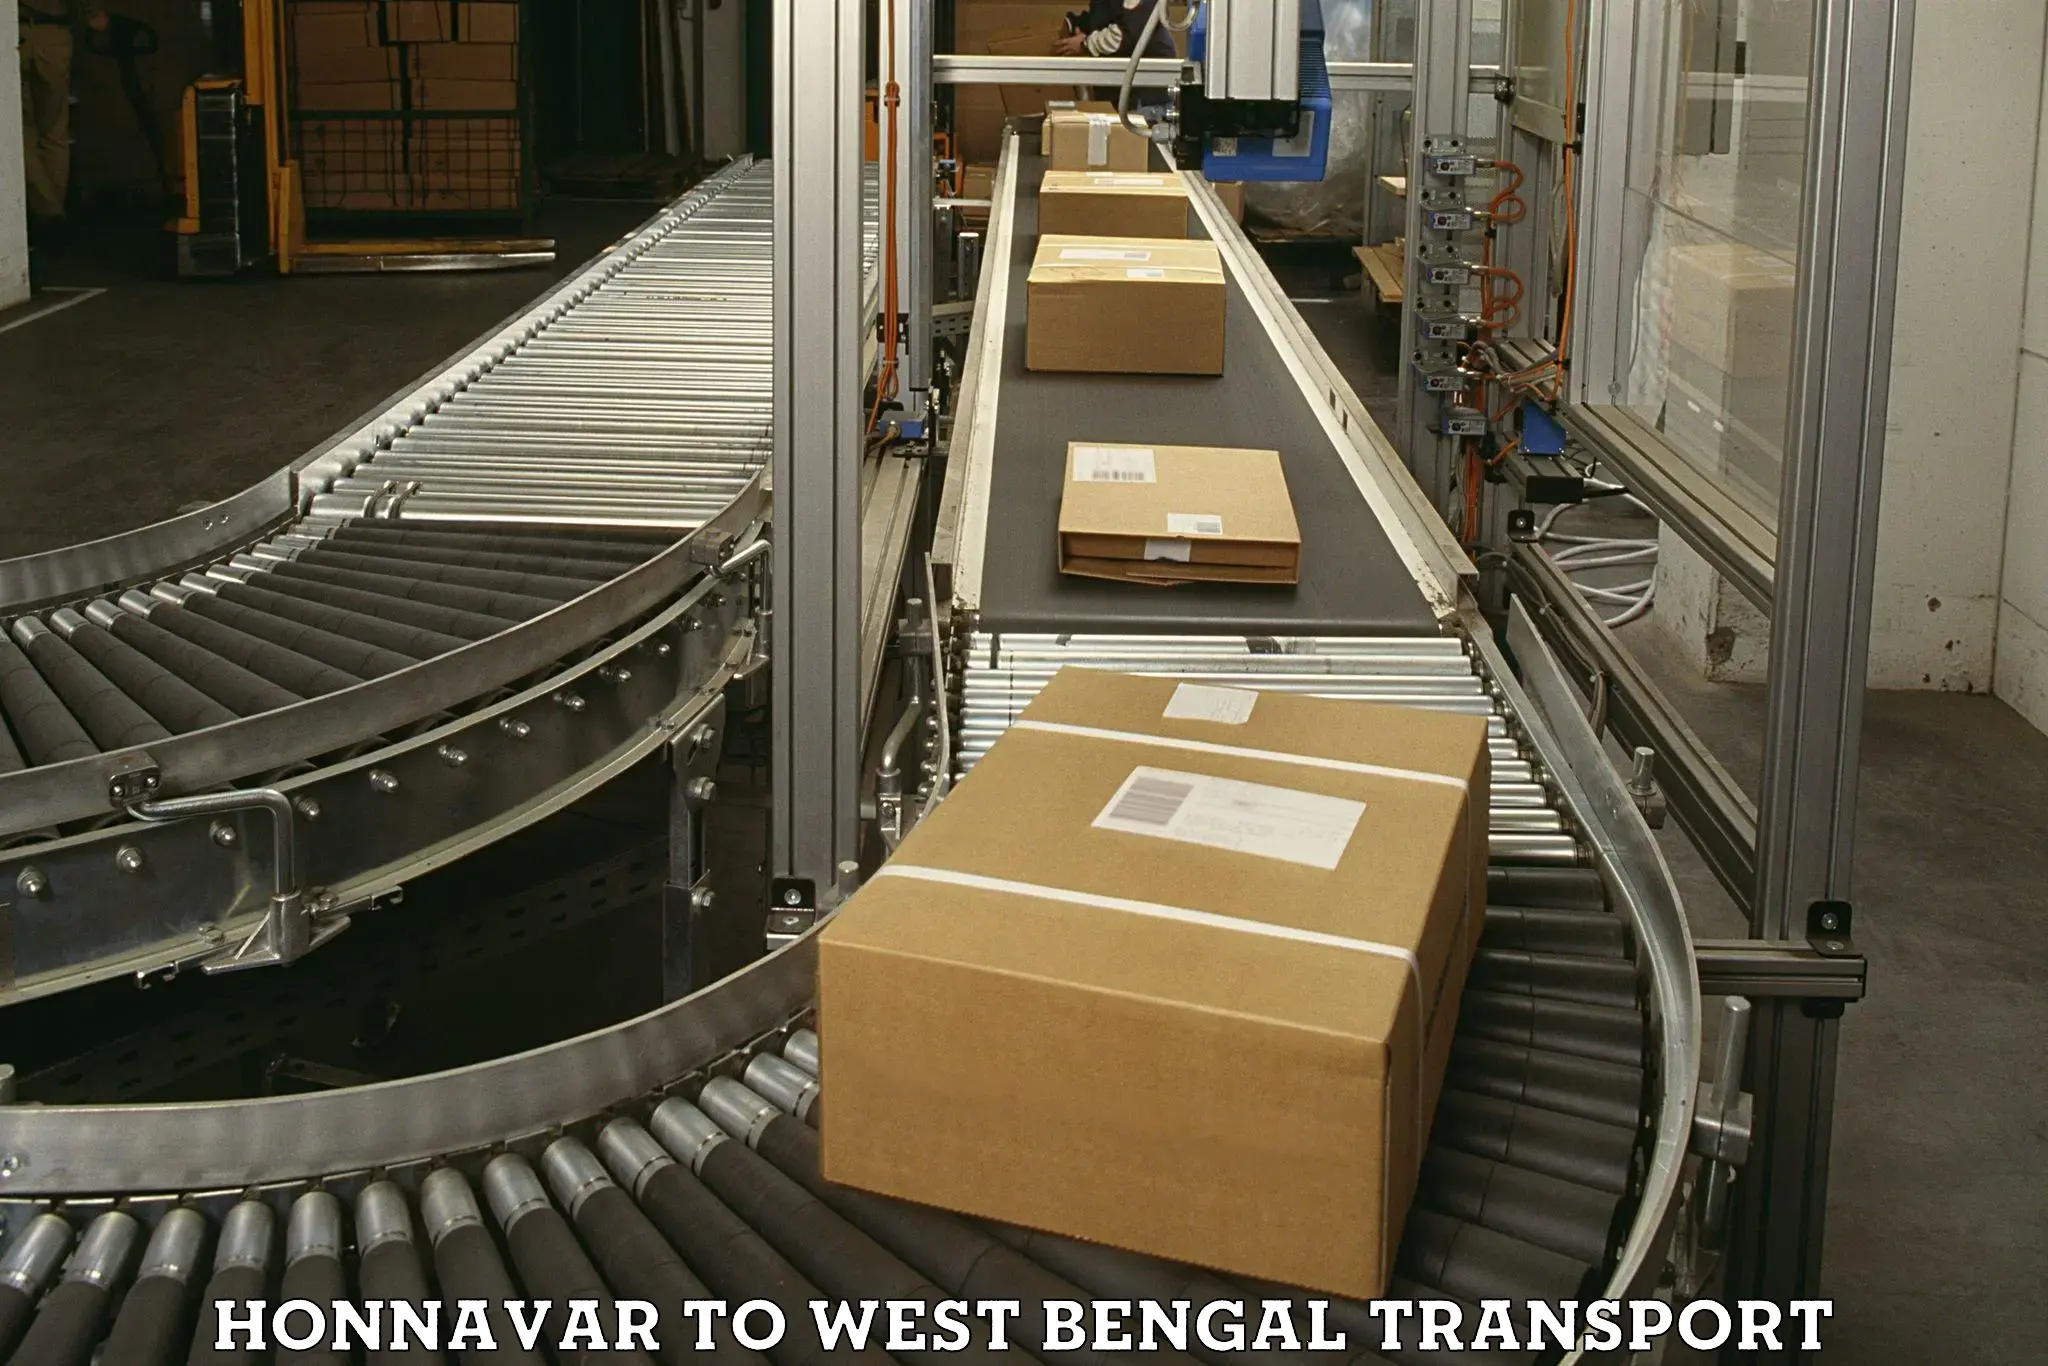 Commercial transport service Honnavar to Bagnan